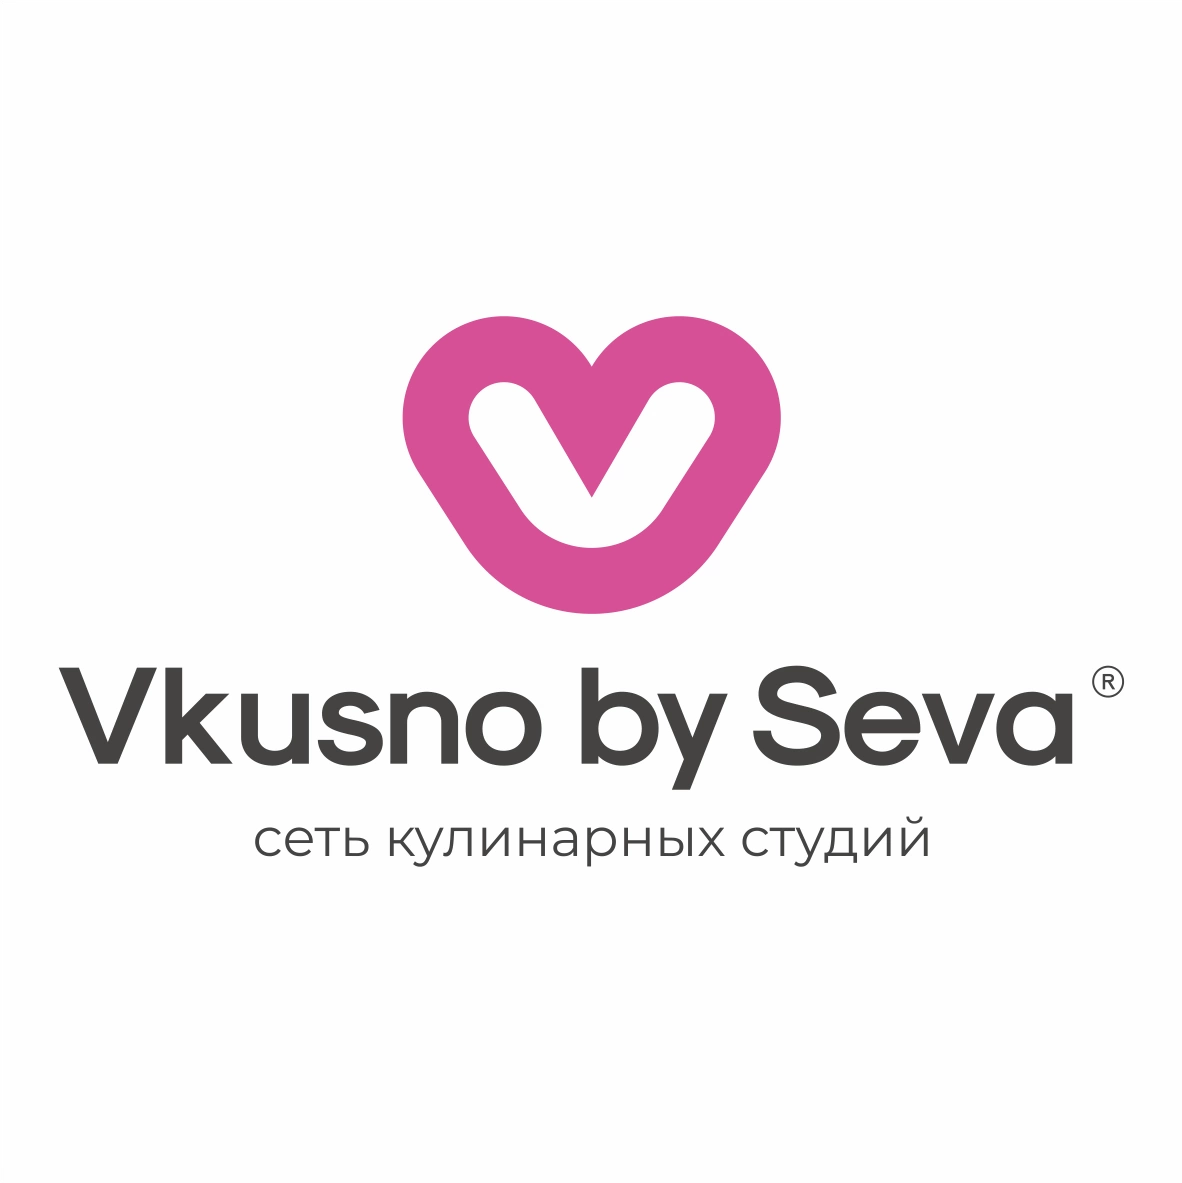 Севара Оганова "Vkusno by Seva" Сеть кулинарных студий 